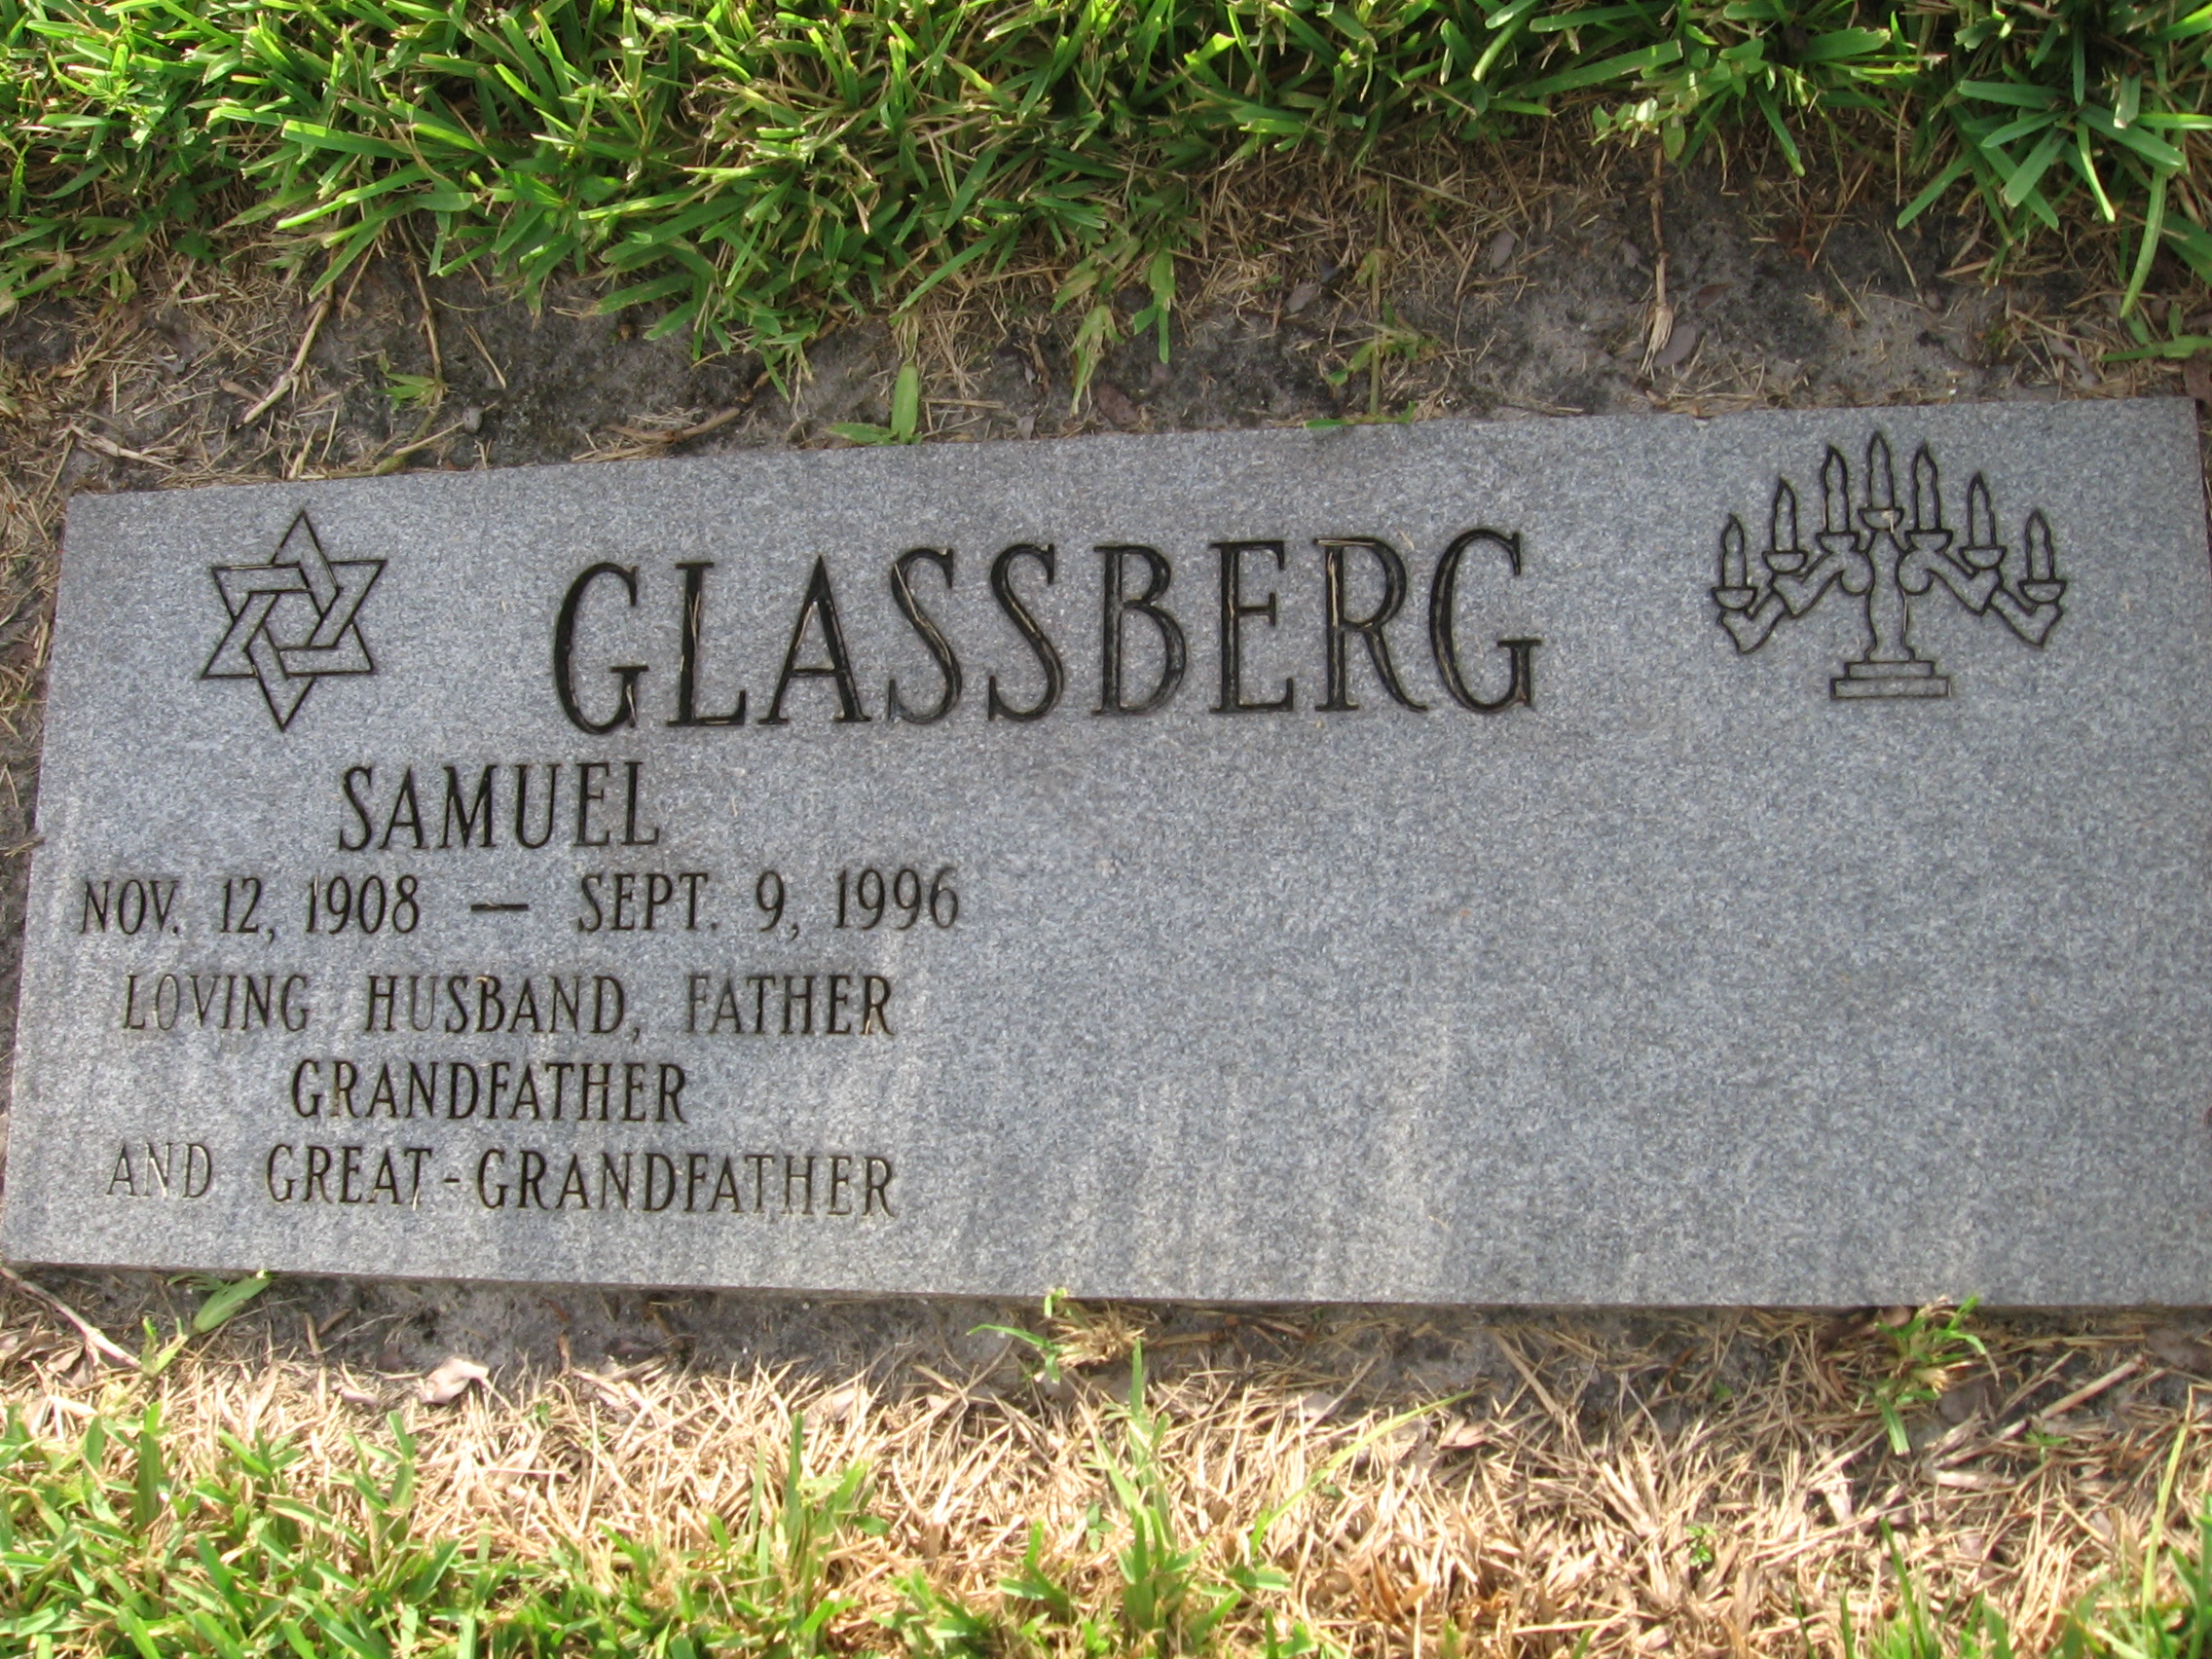 Samuel Glassberg